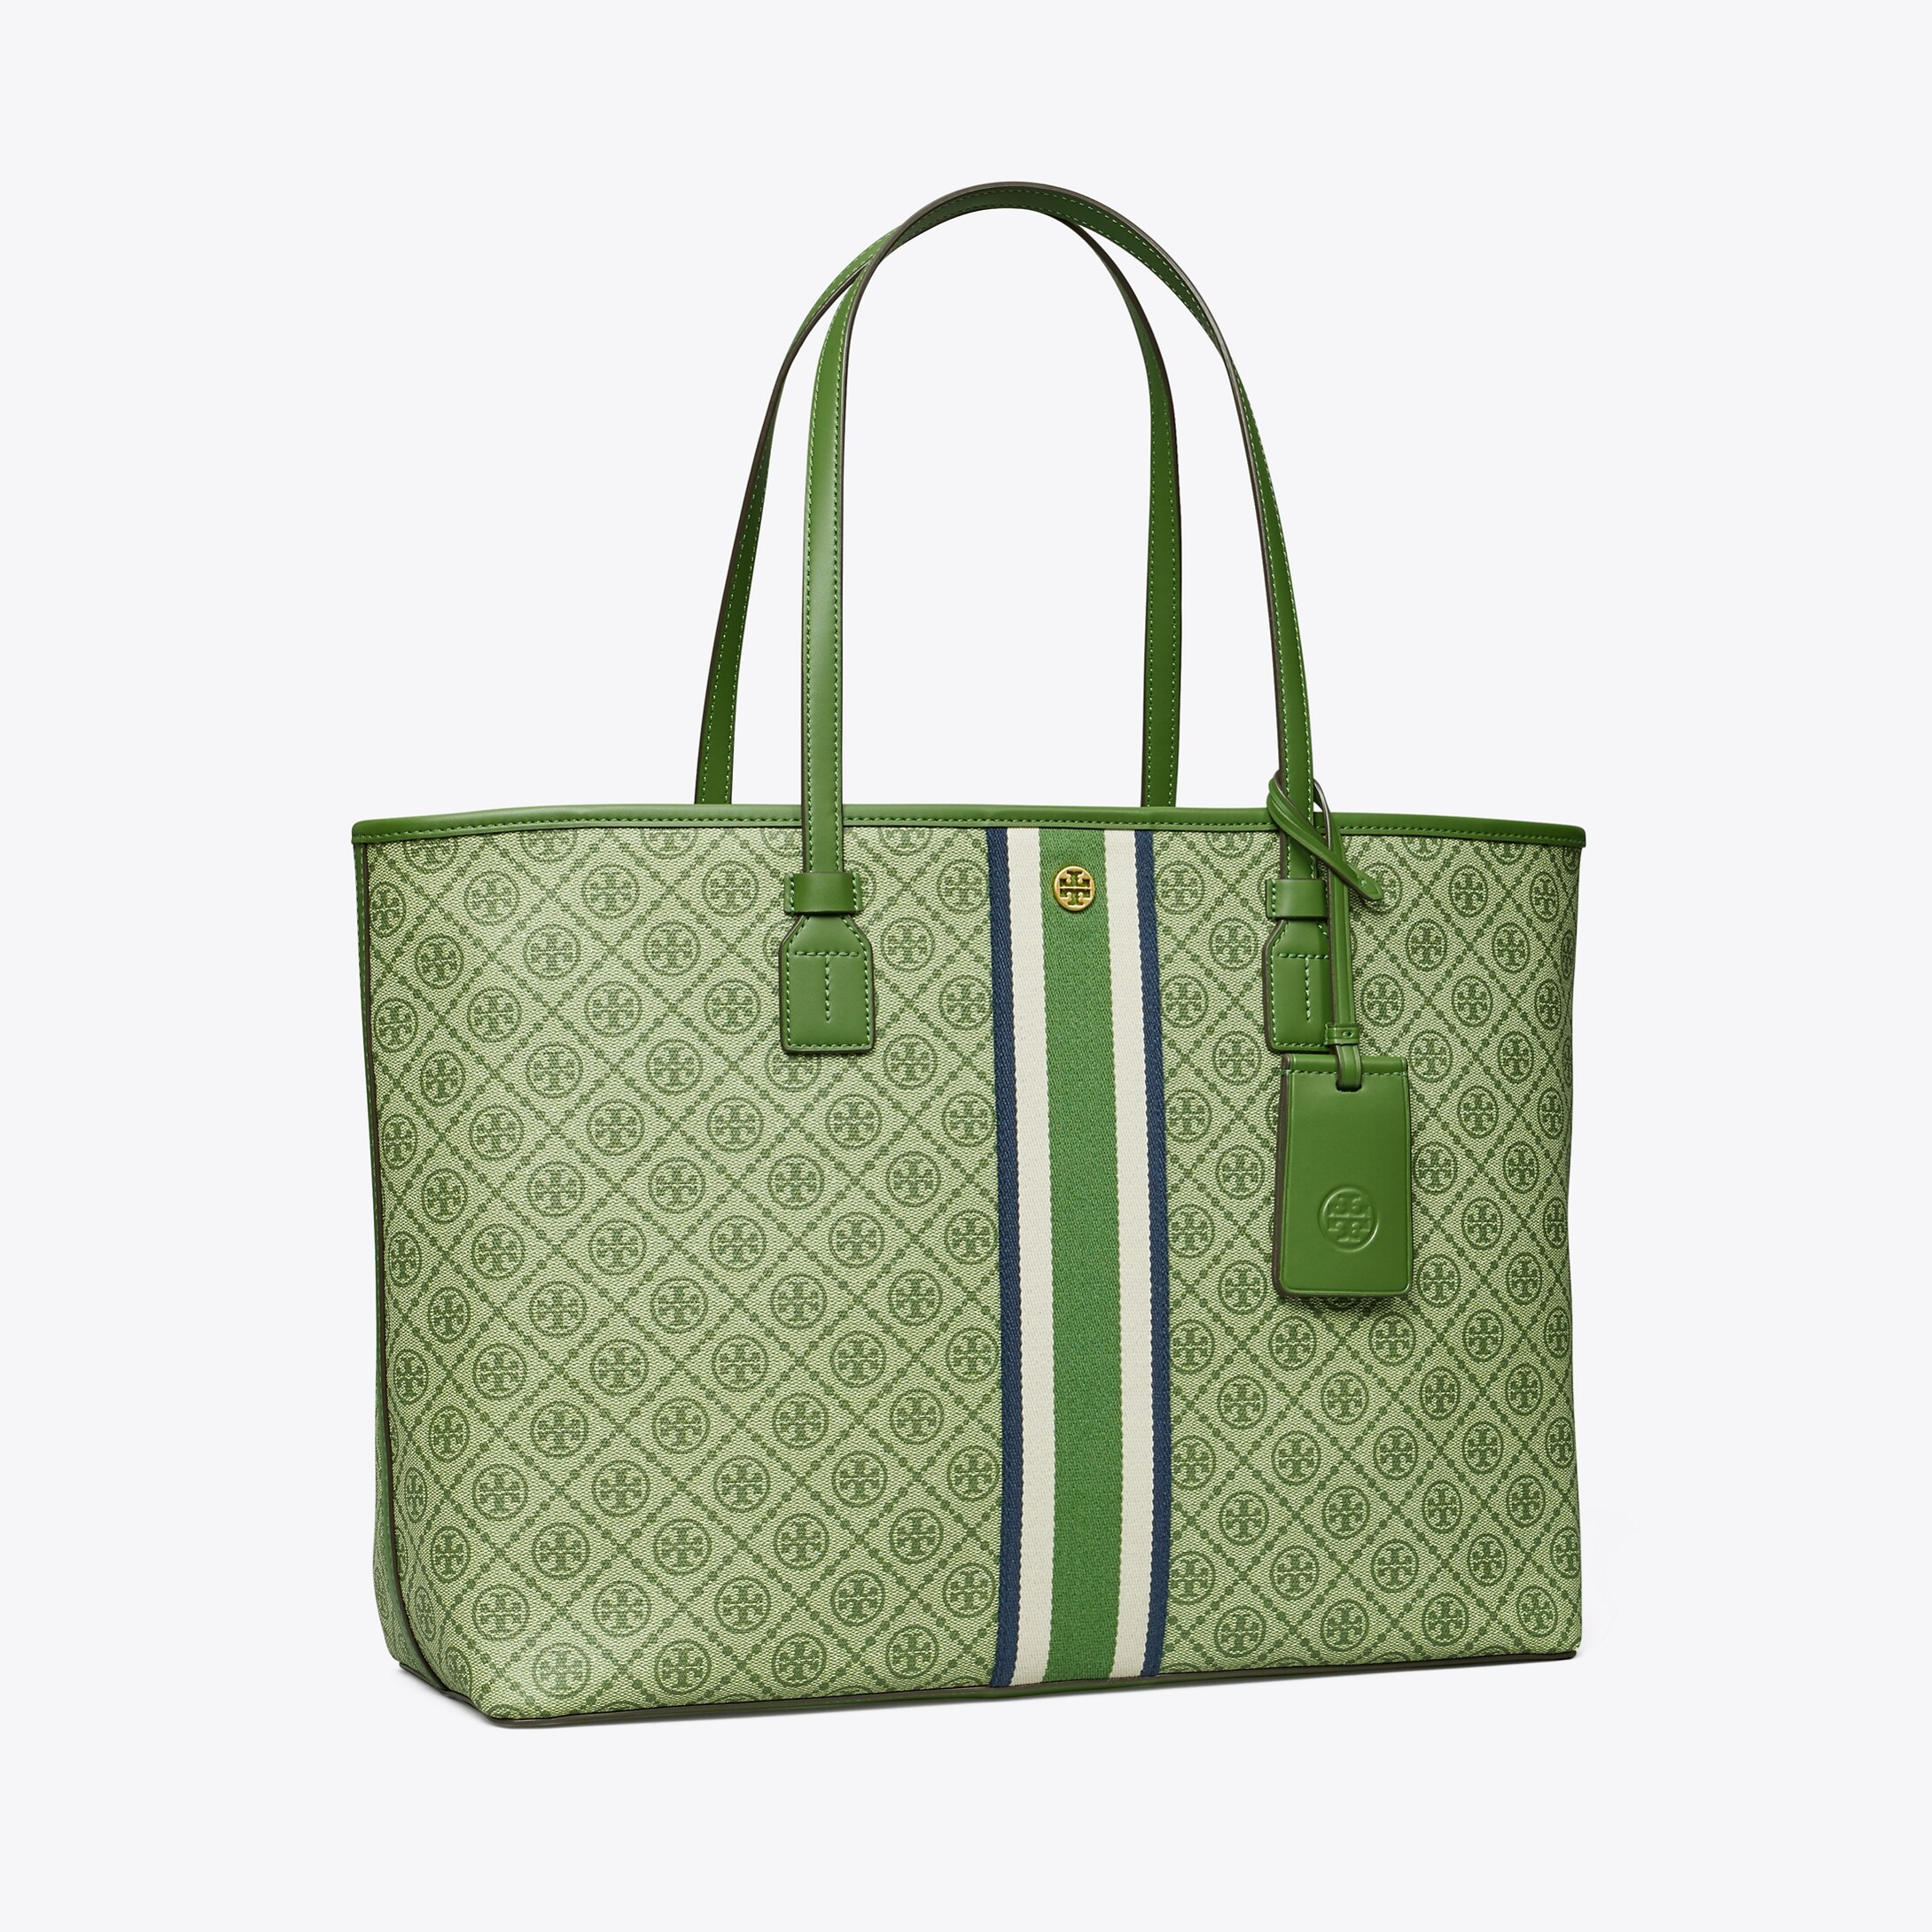 Tory Burch T Monogram Tote Bag in Green